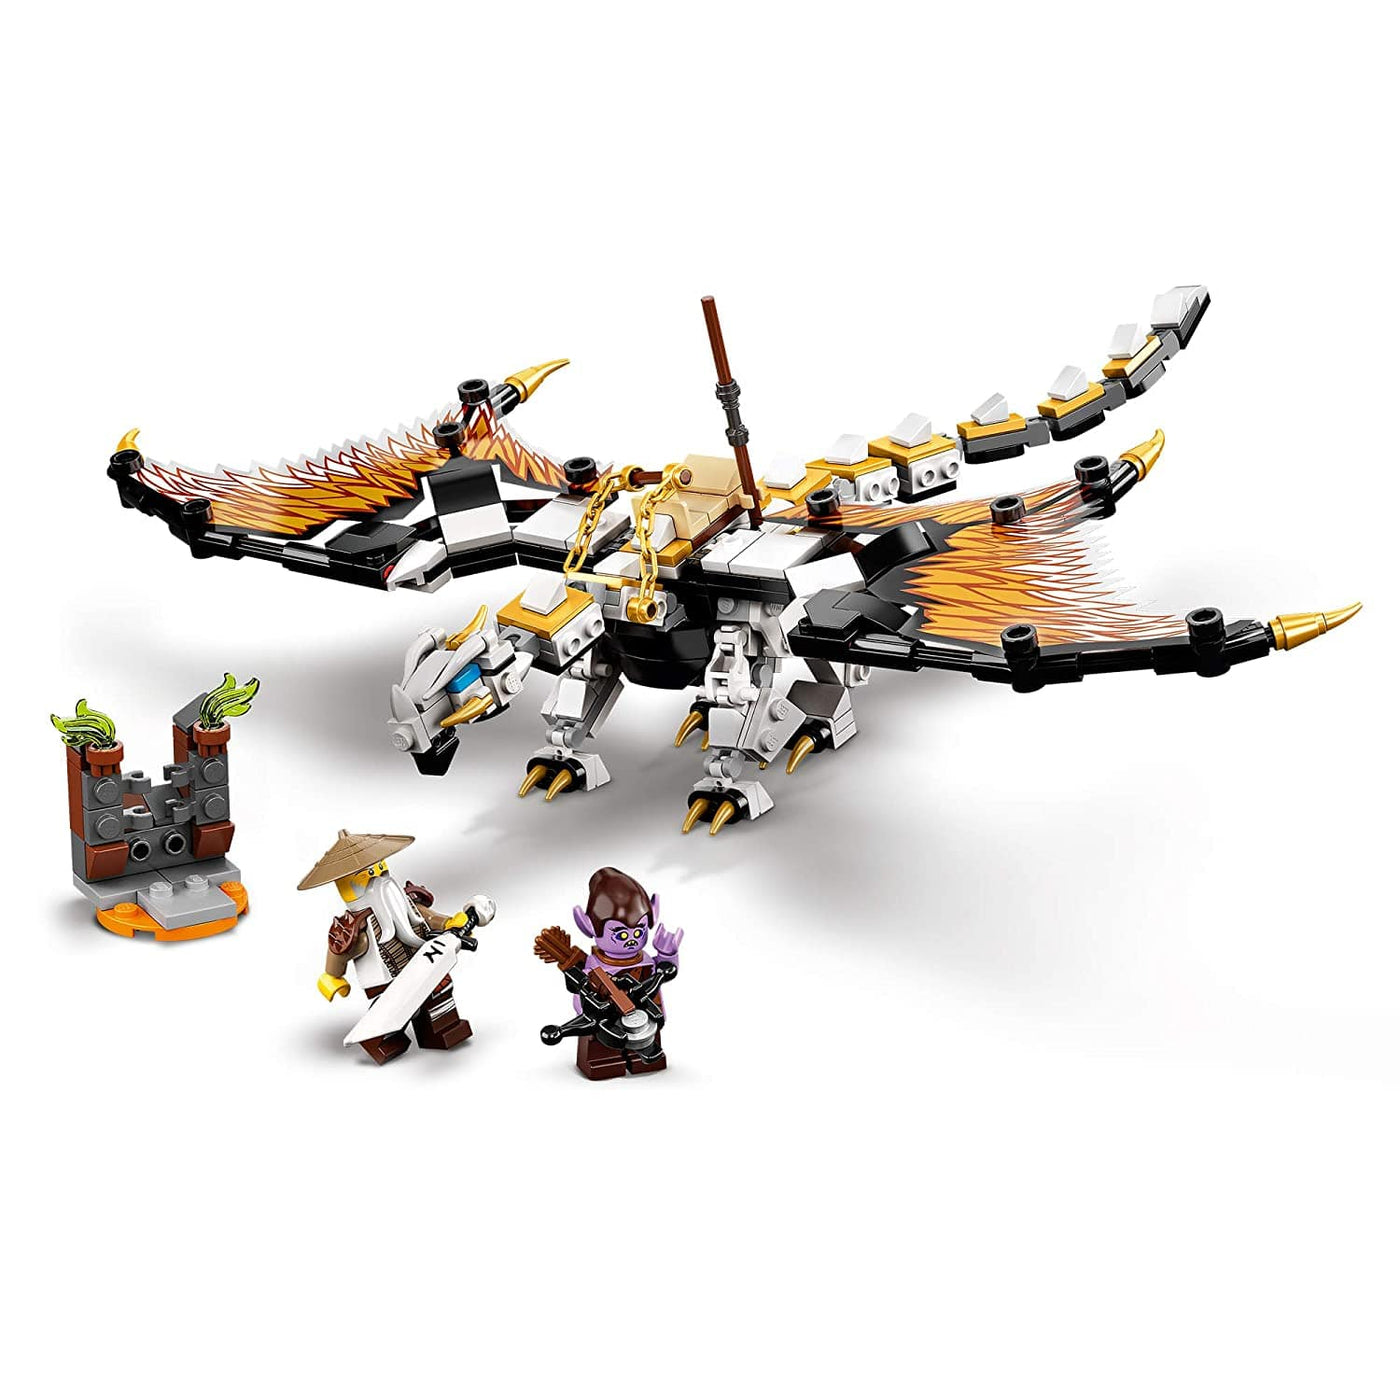 LEGO NINJAGO Wu's Battle Dragon, 71718 by LEGO, Denmark Toy